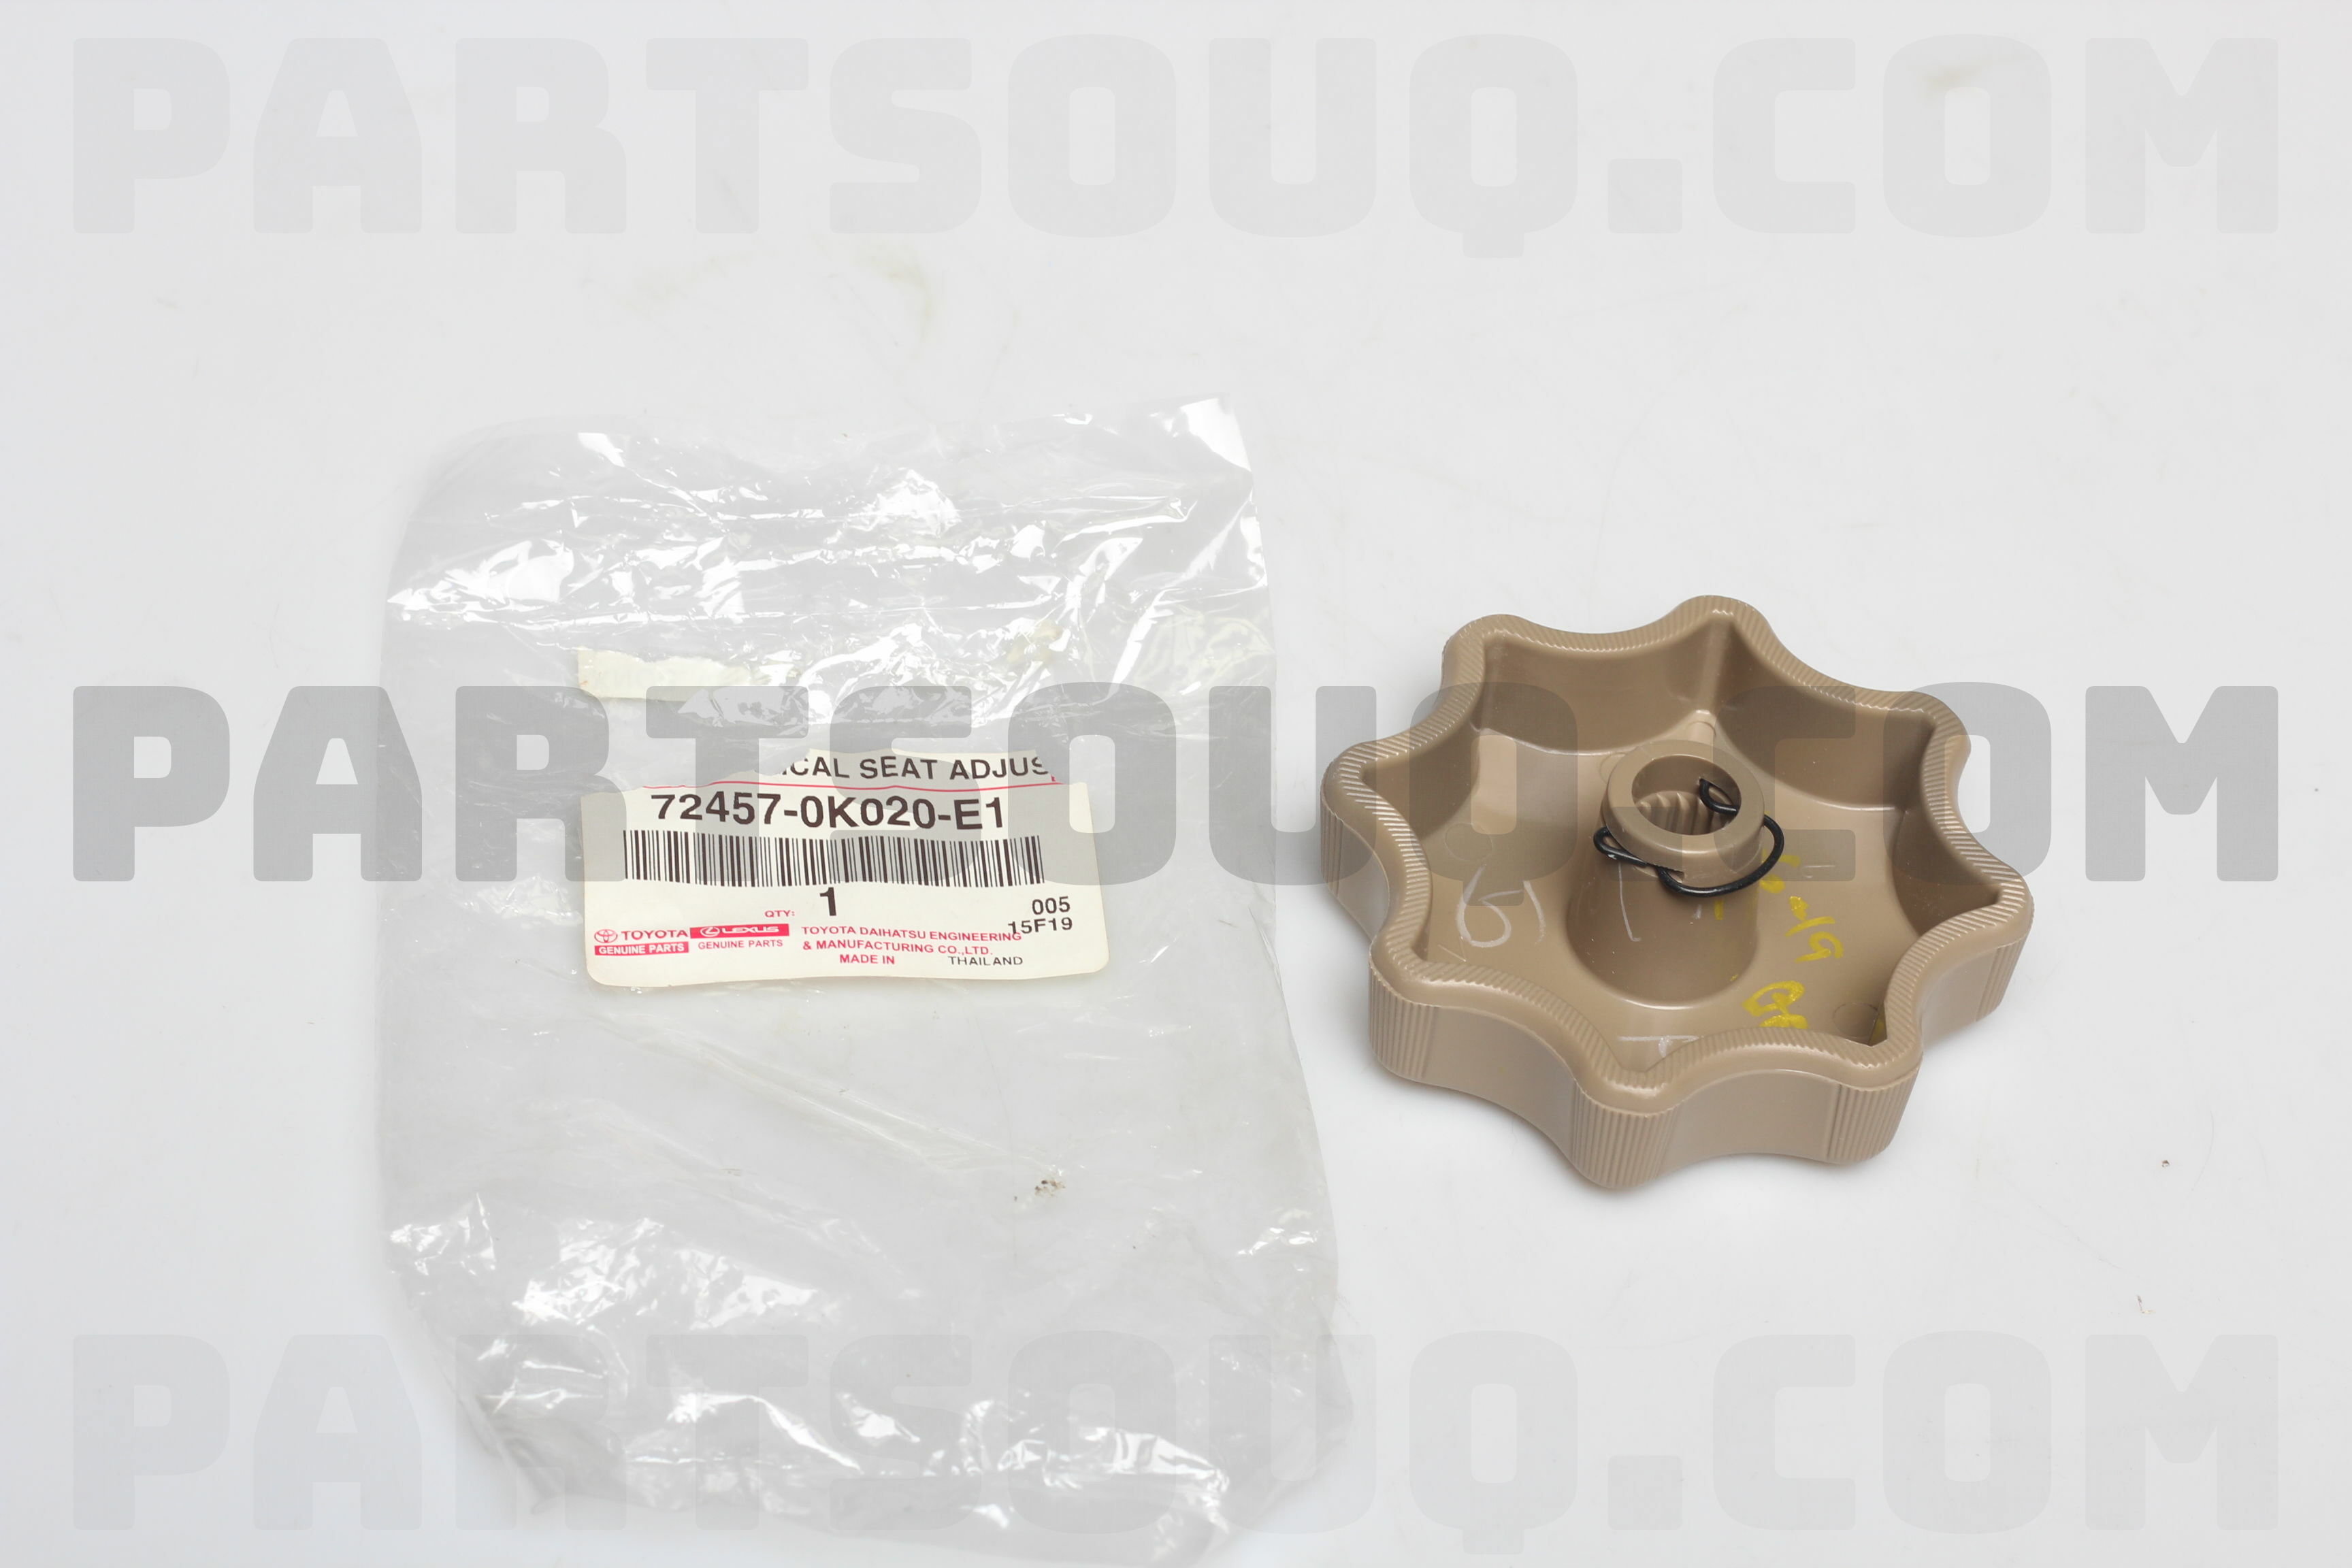 Toyota 72457-14030-04 Side Support Adjuster Knob 